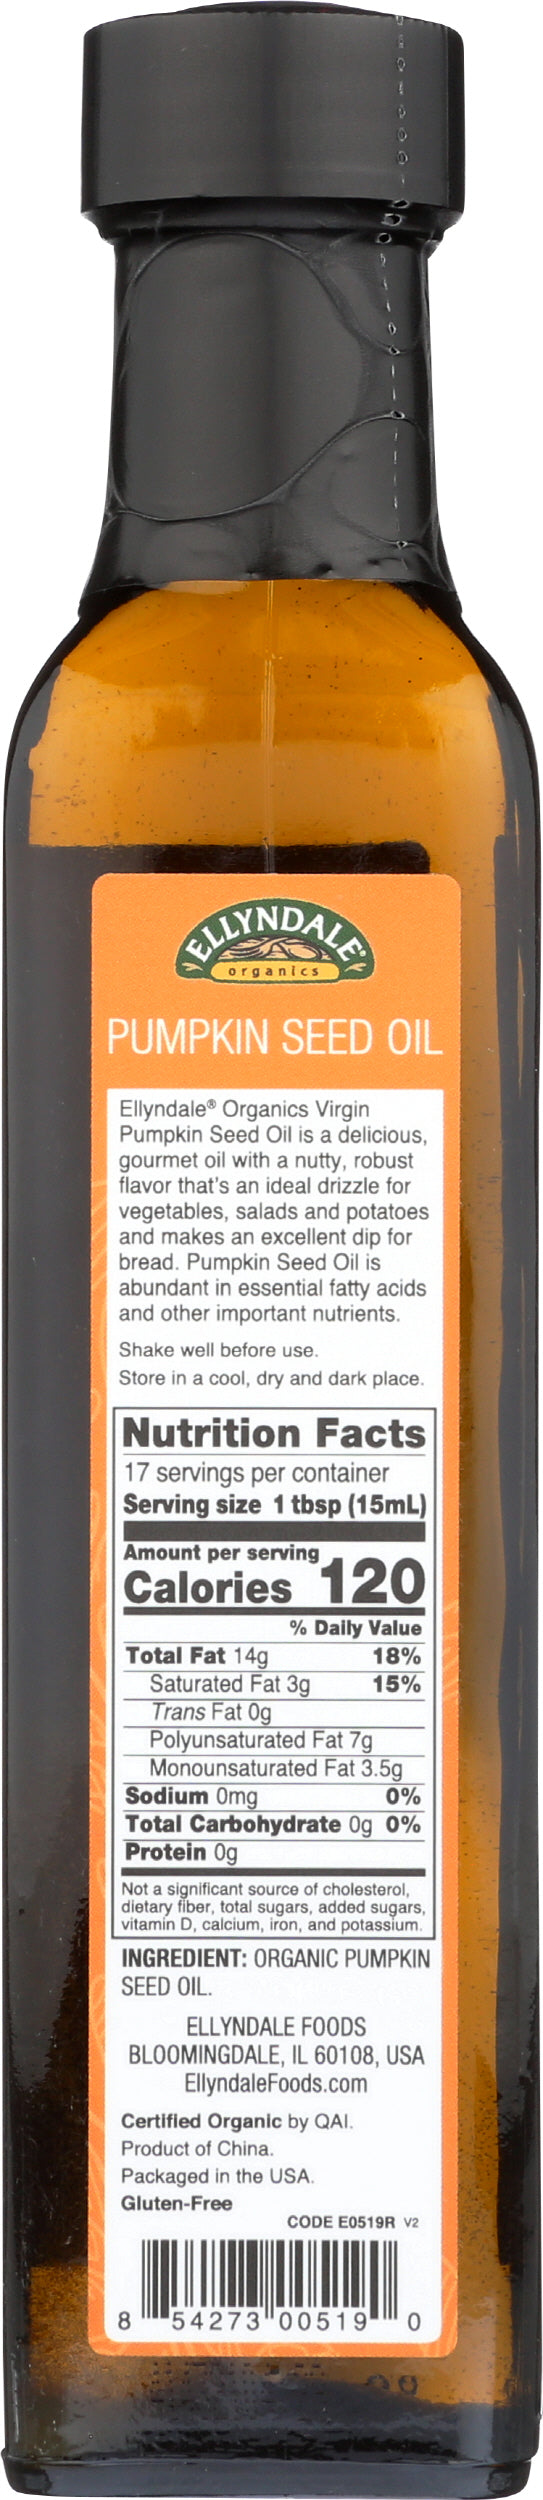 Ellyndale Organic Virgin Pumpkin Seed Oil 8.45 Fl. Oz. Back of Bottle